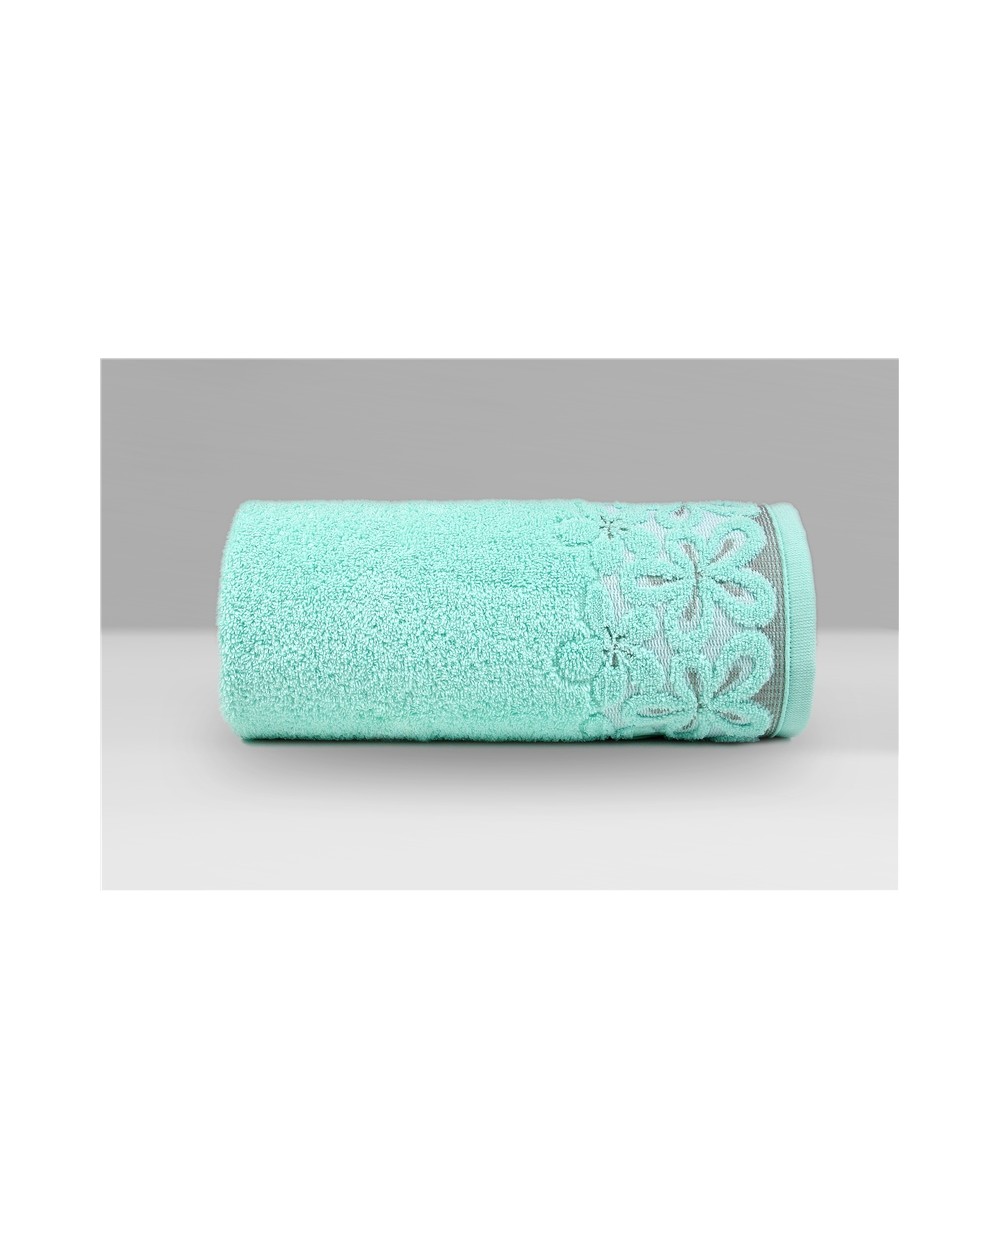 Ręcznik Bella mikrobawełna 50x90 miętowy